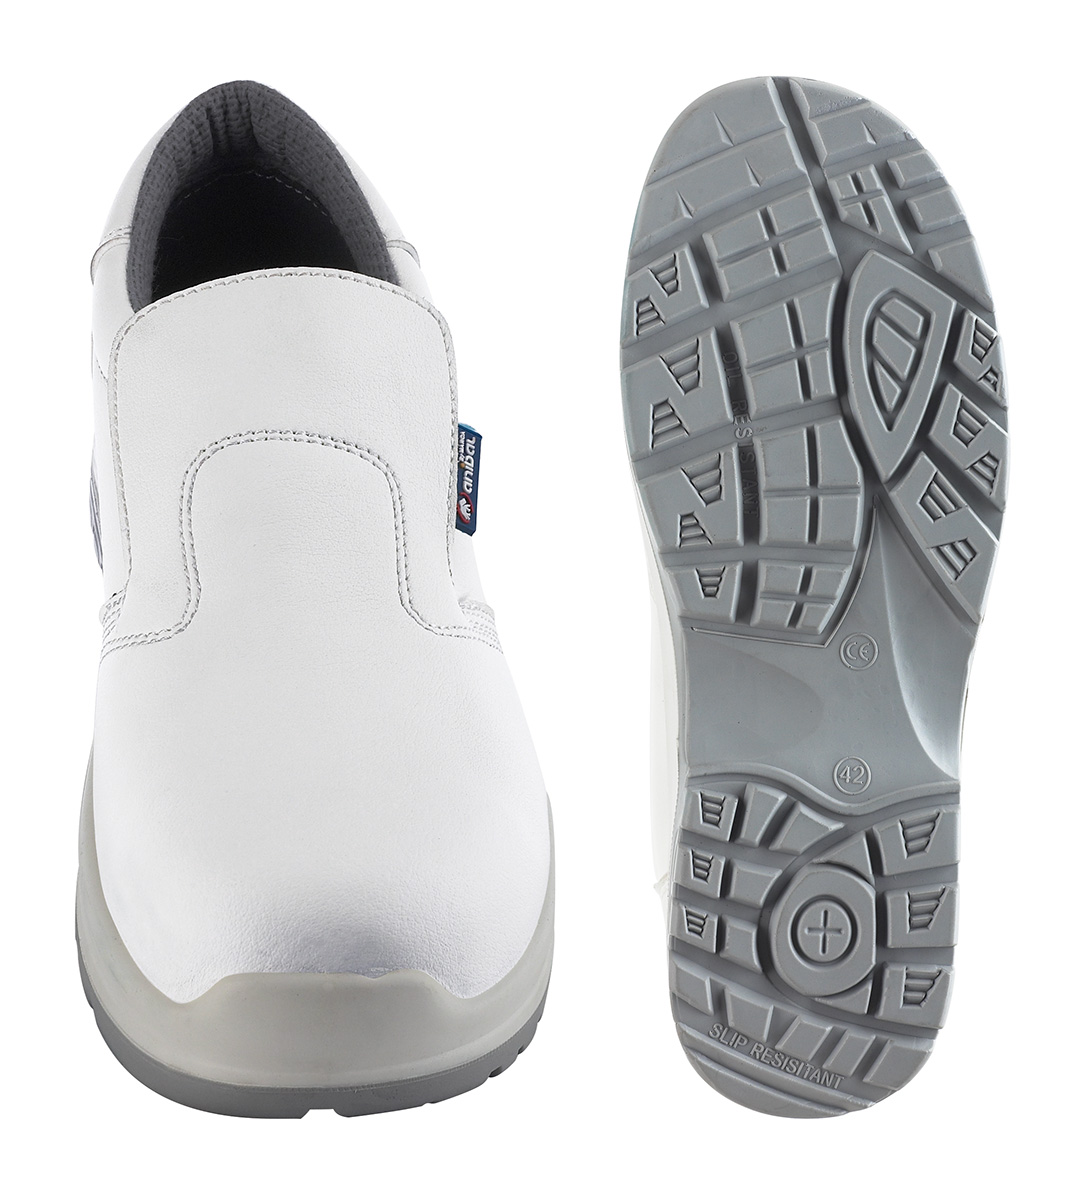 1688-ZBM PRO Chaussures de securite Basic Line Chaussure mod. 'ADRIATICO'. Chaussure microfibre type mocassin S2 “Metal Free” blanche avec semelle double densité en Polyuréthane. 